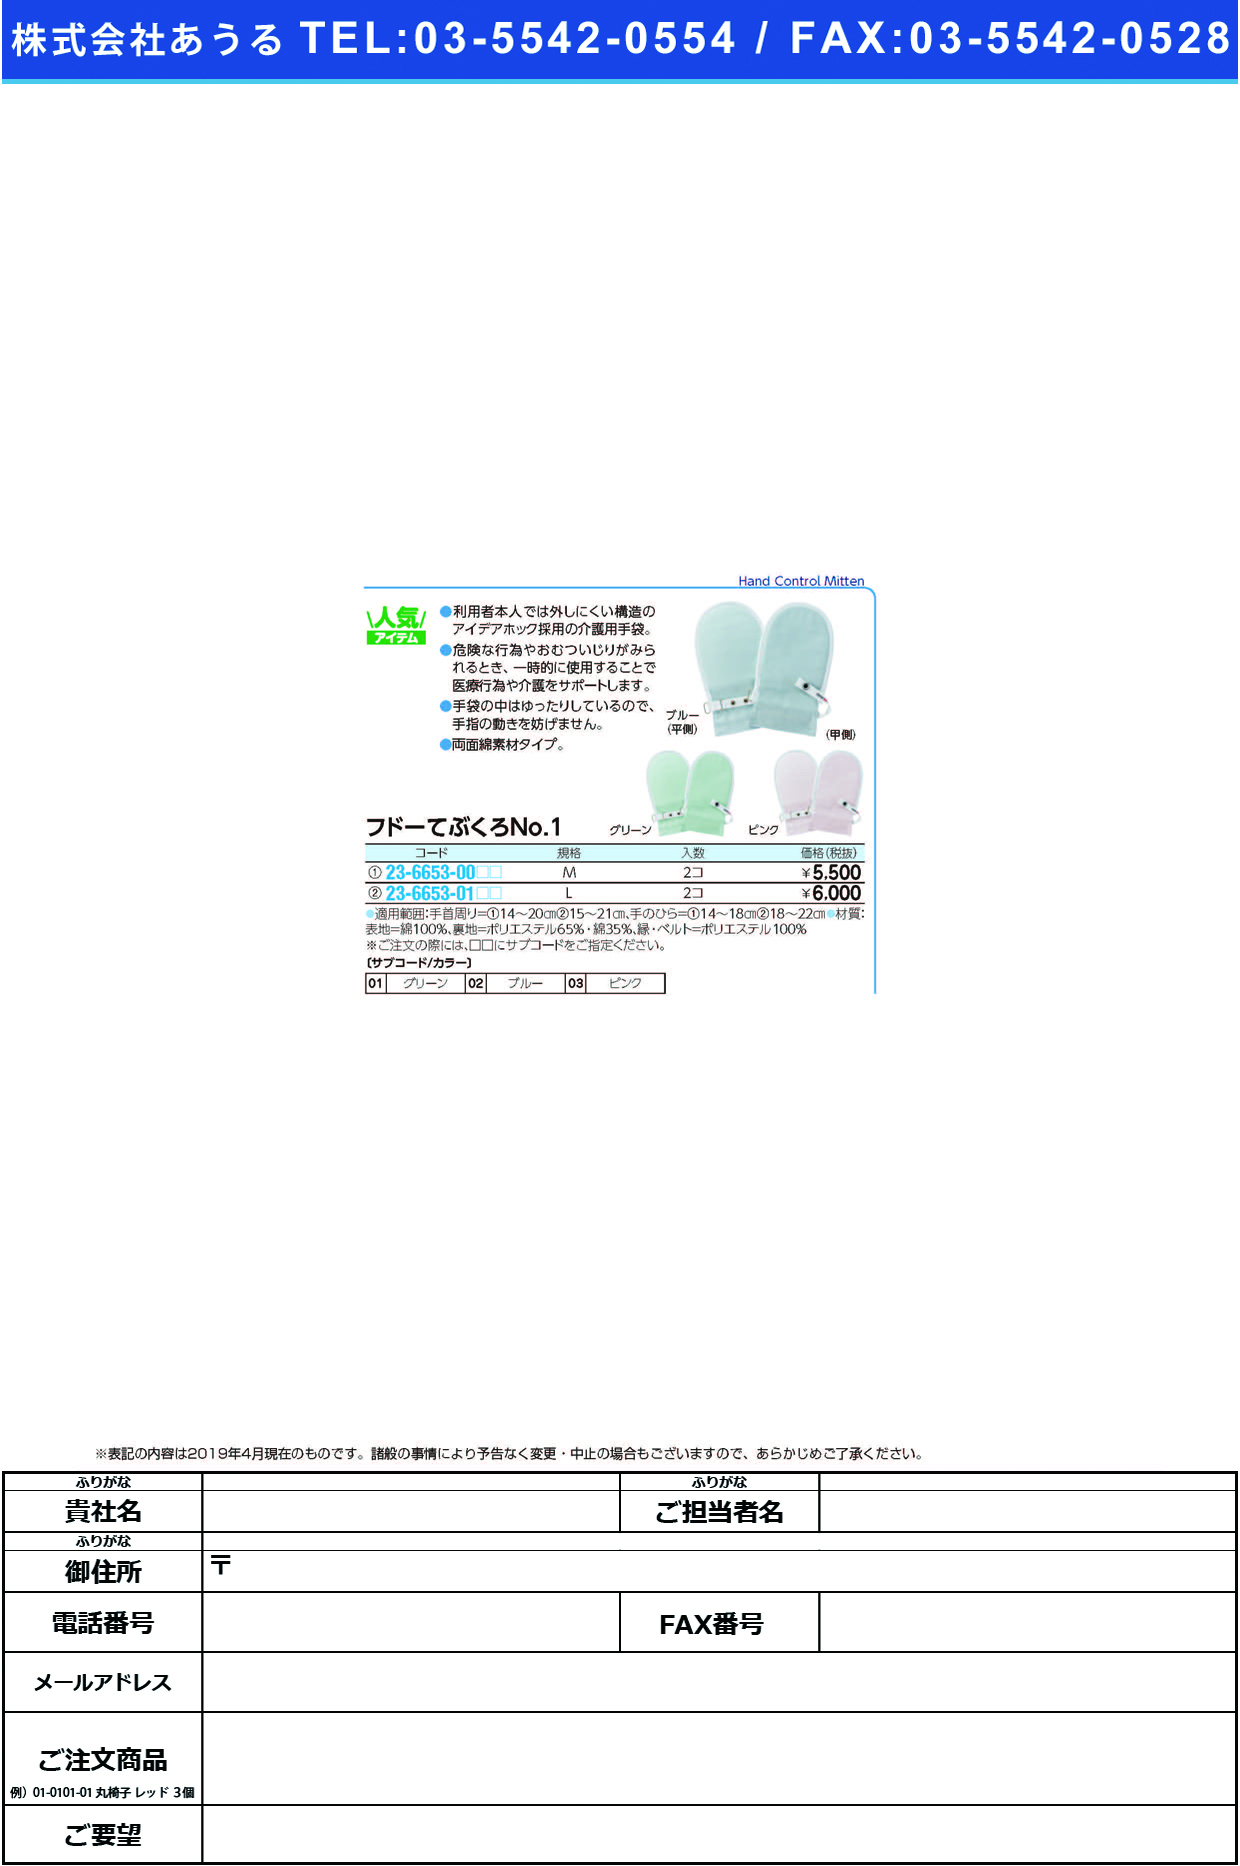 (23-6653-00)フドーてぶくろＮｏ．１ M(2ﾏｲｲﾘ) ﾌﾄﾞｰﾃﾌﾞｸﾛNO1 グリーン【1双単位】【2019年カタログ商品】